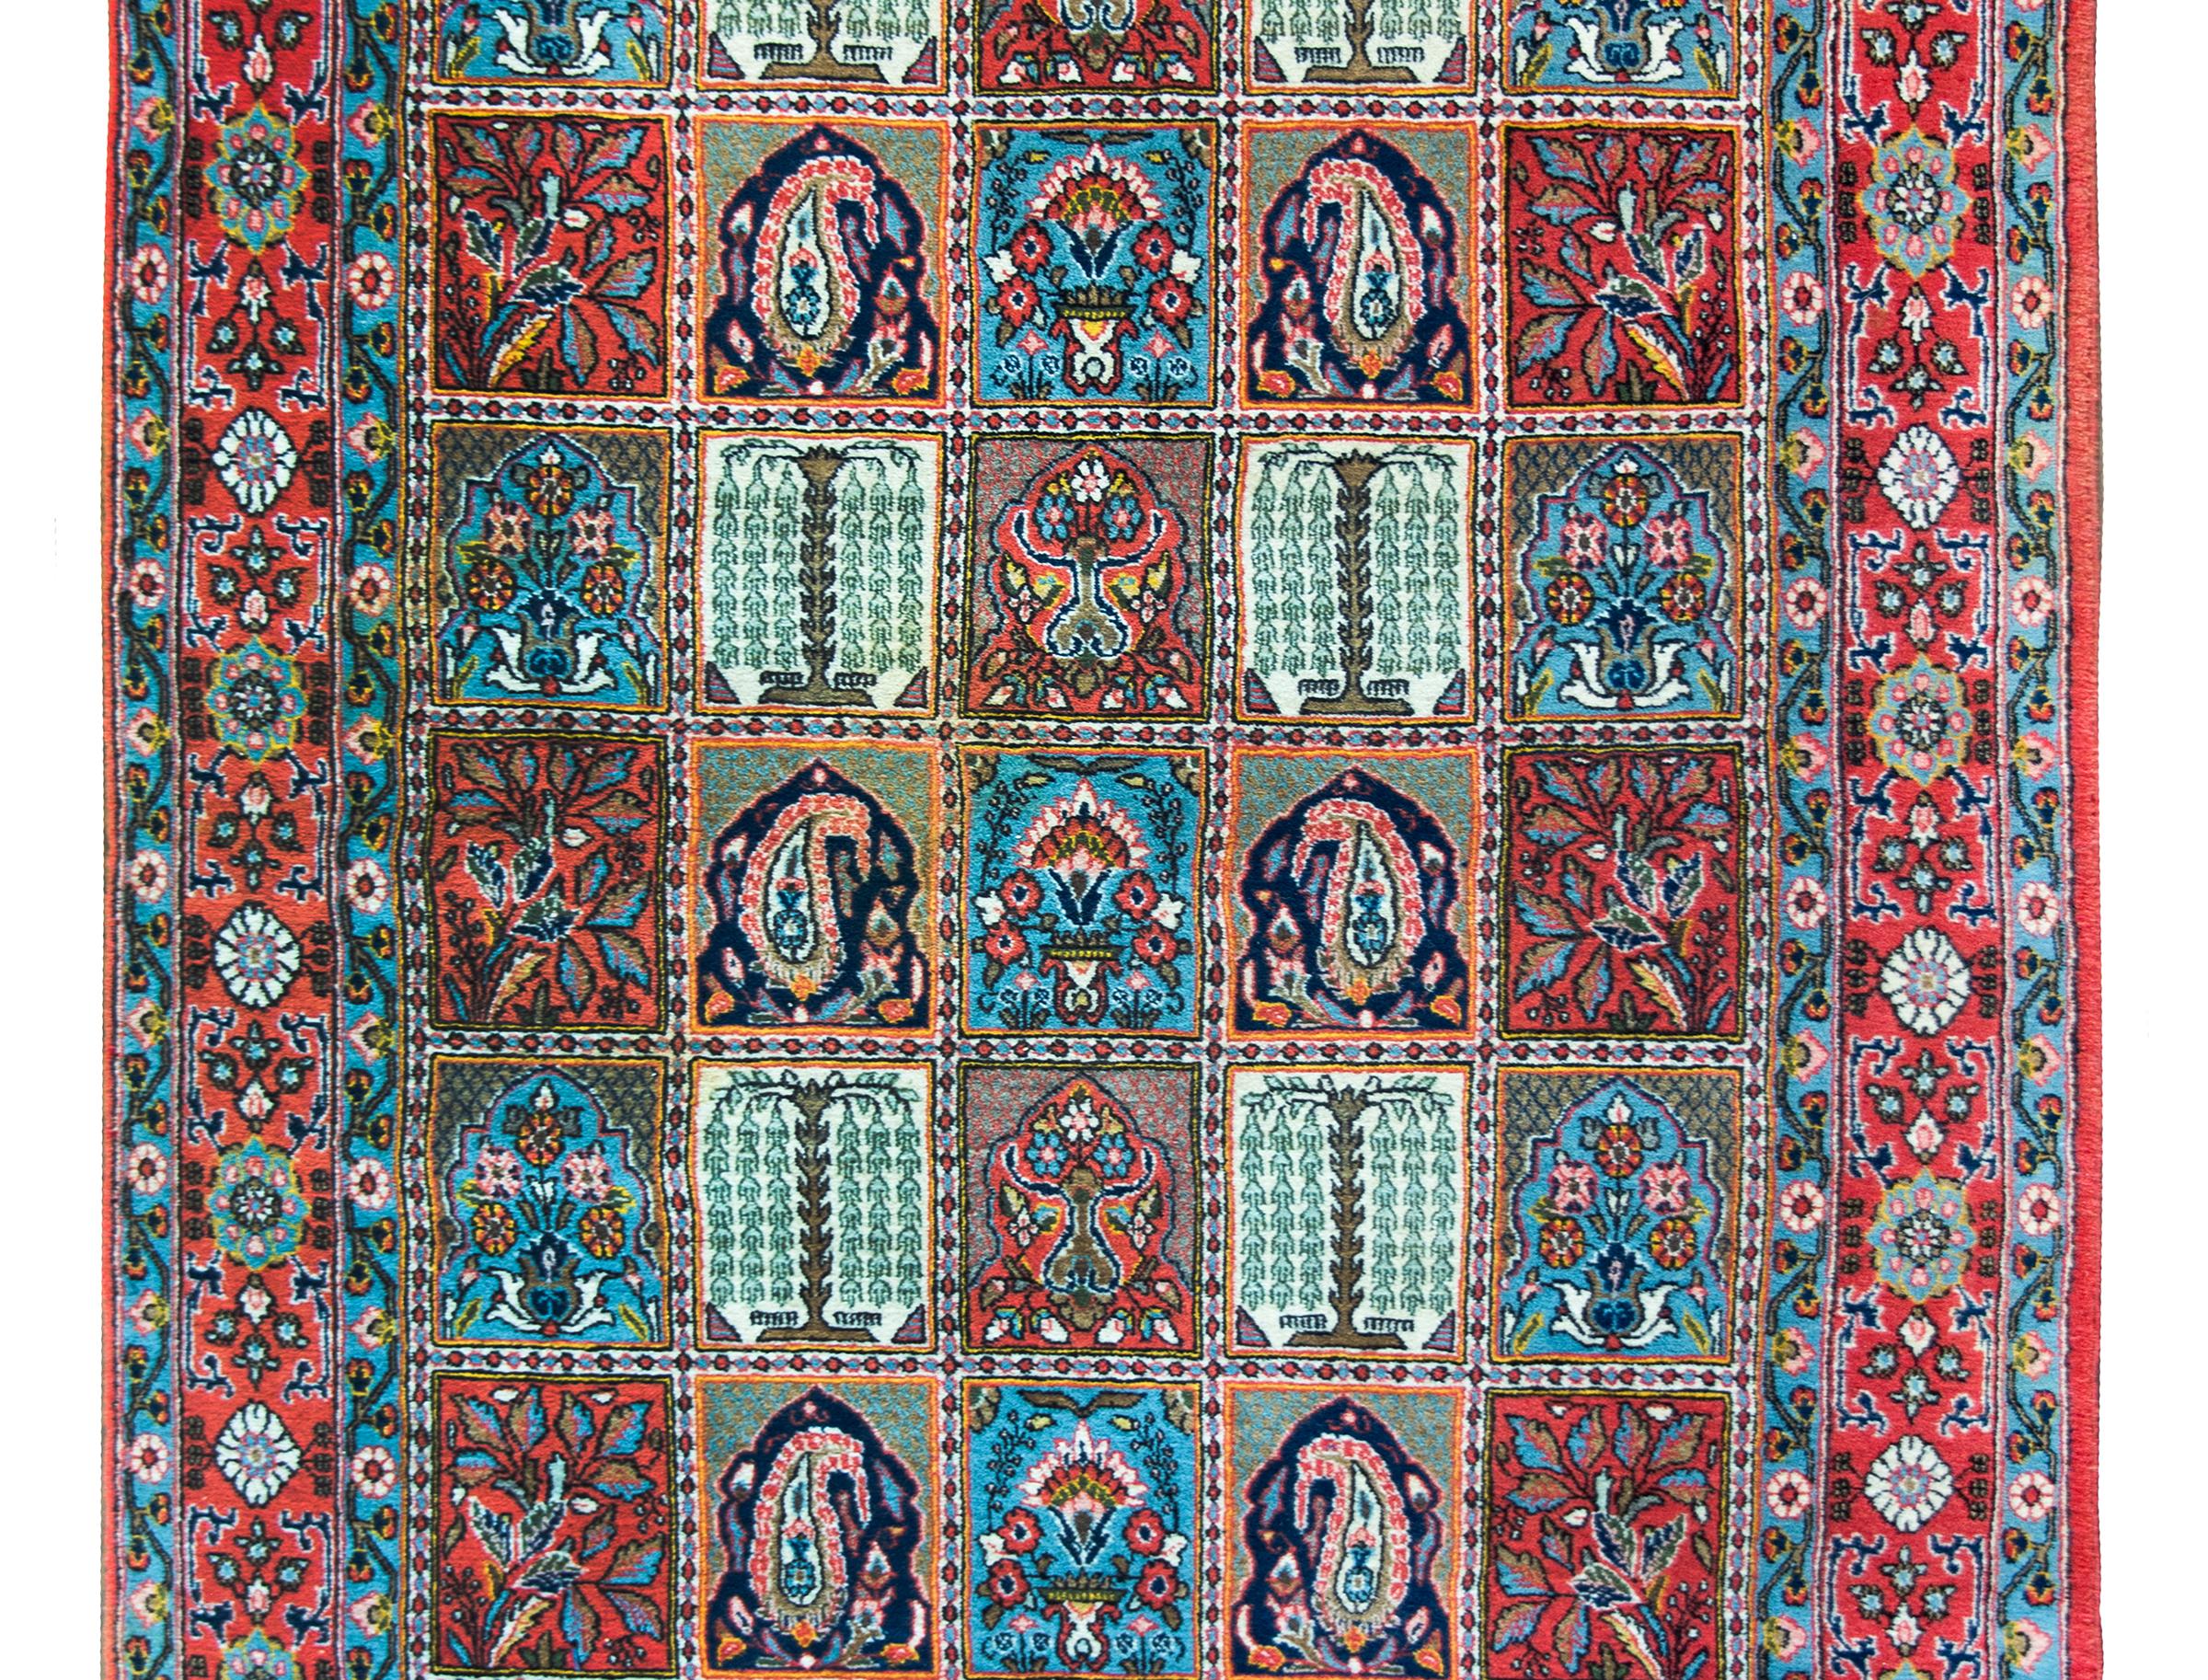 Magnifique tapis persan Bakhtiari vintage avec un motif en patchwork sur tout le pourtour avec plusieurs motifs floraux, paisley, saule pleureur et arbres de vie répétés, et entouré d'une bordure avec une large bande centrale florale flanquée de